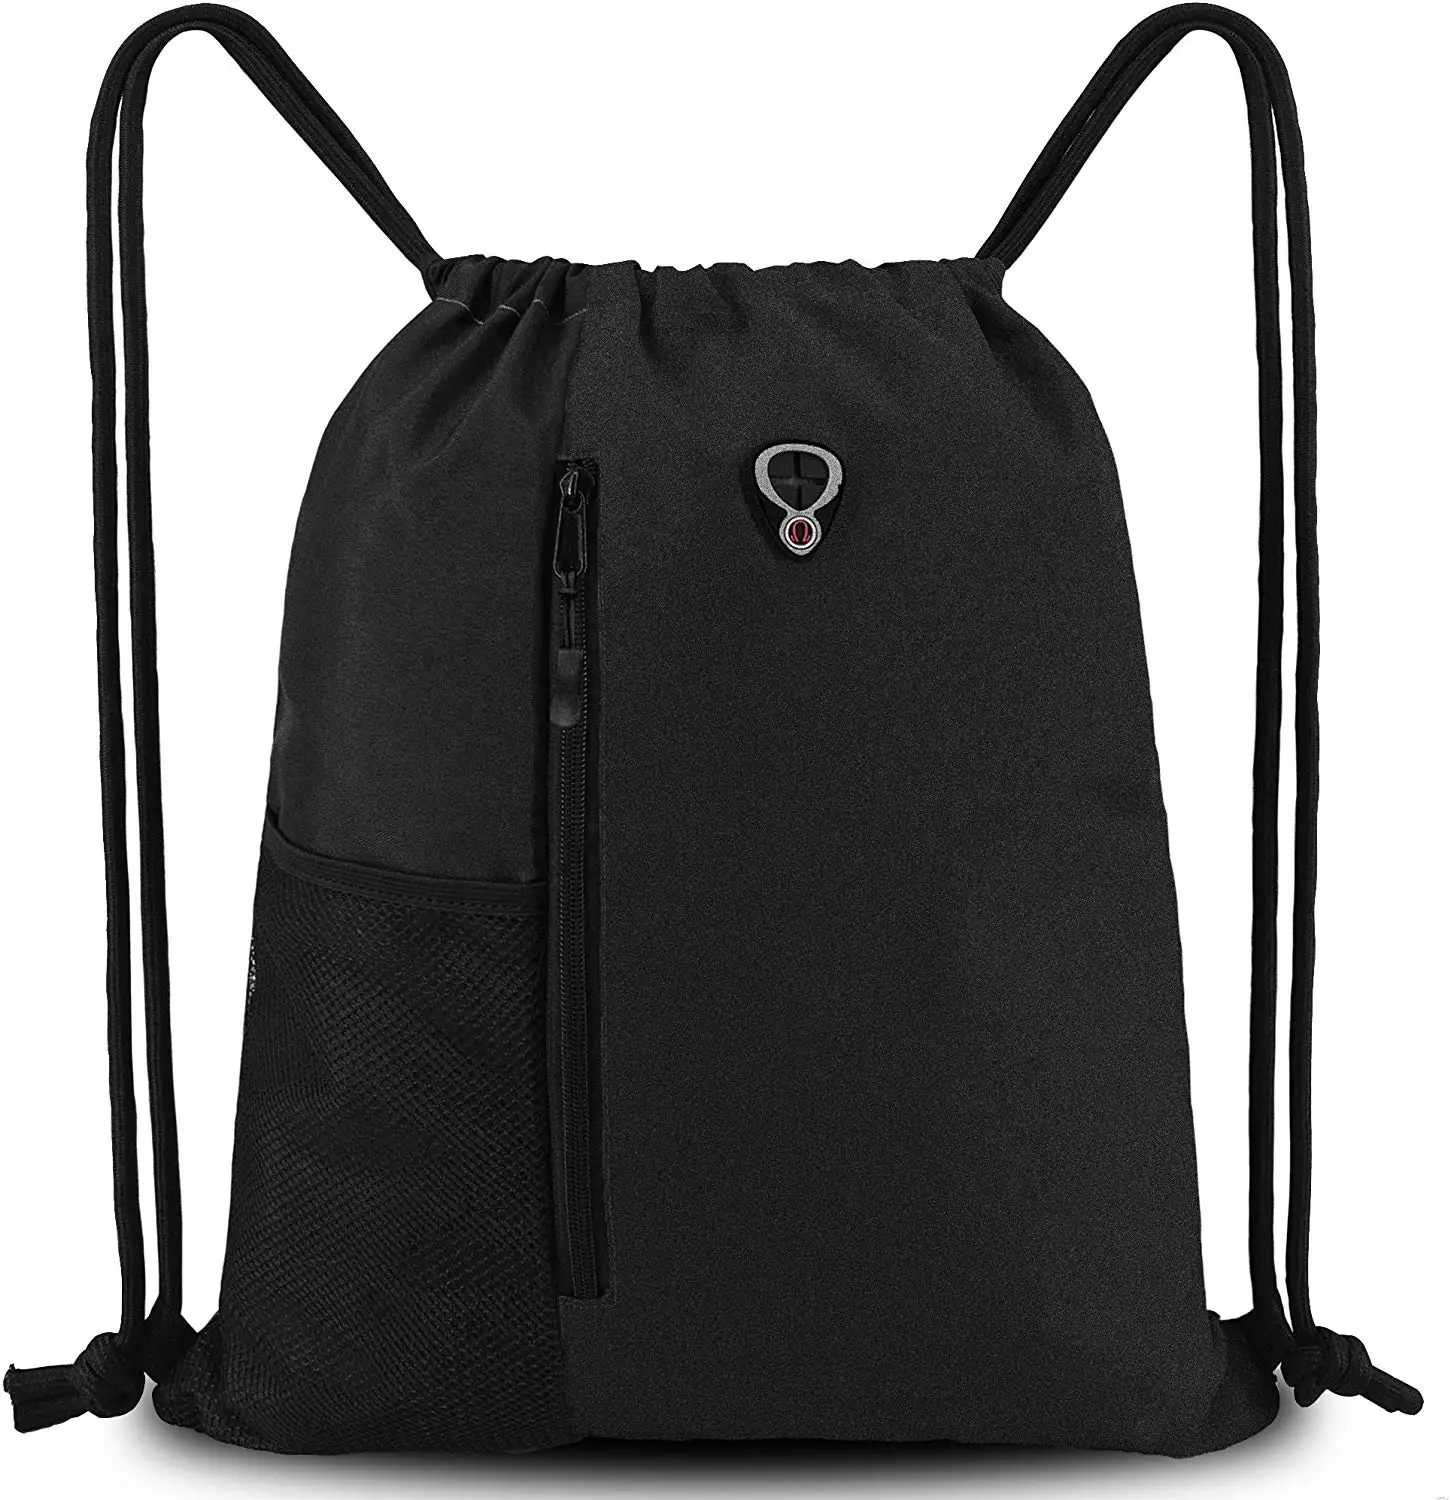 Big Backpack Old Color World Map Pattern Gym Drawstring Bags Backpack Sports String Bundle Backpack For Sport With Shoe Pocket Xl Gym Bag For Men 